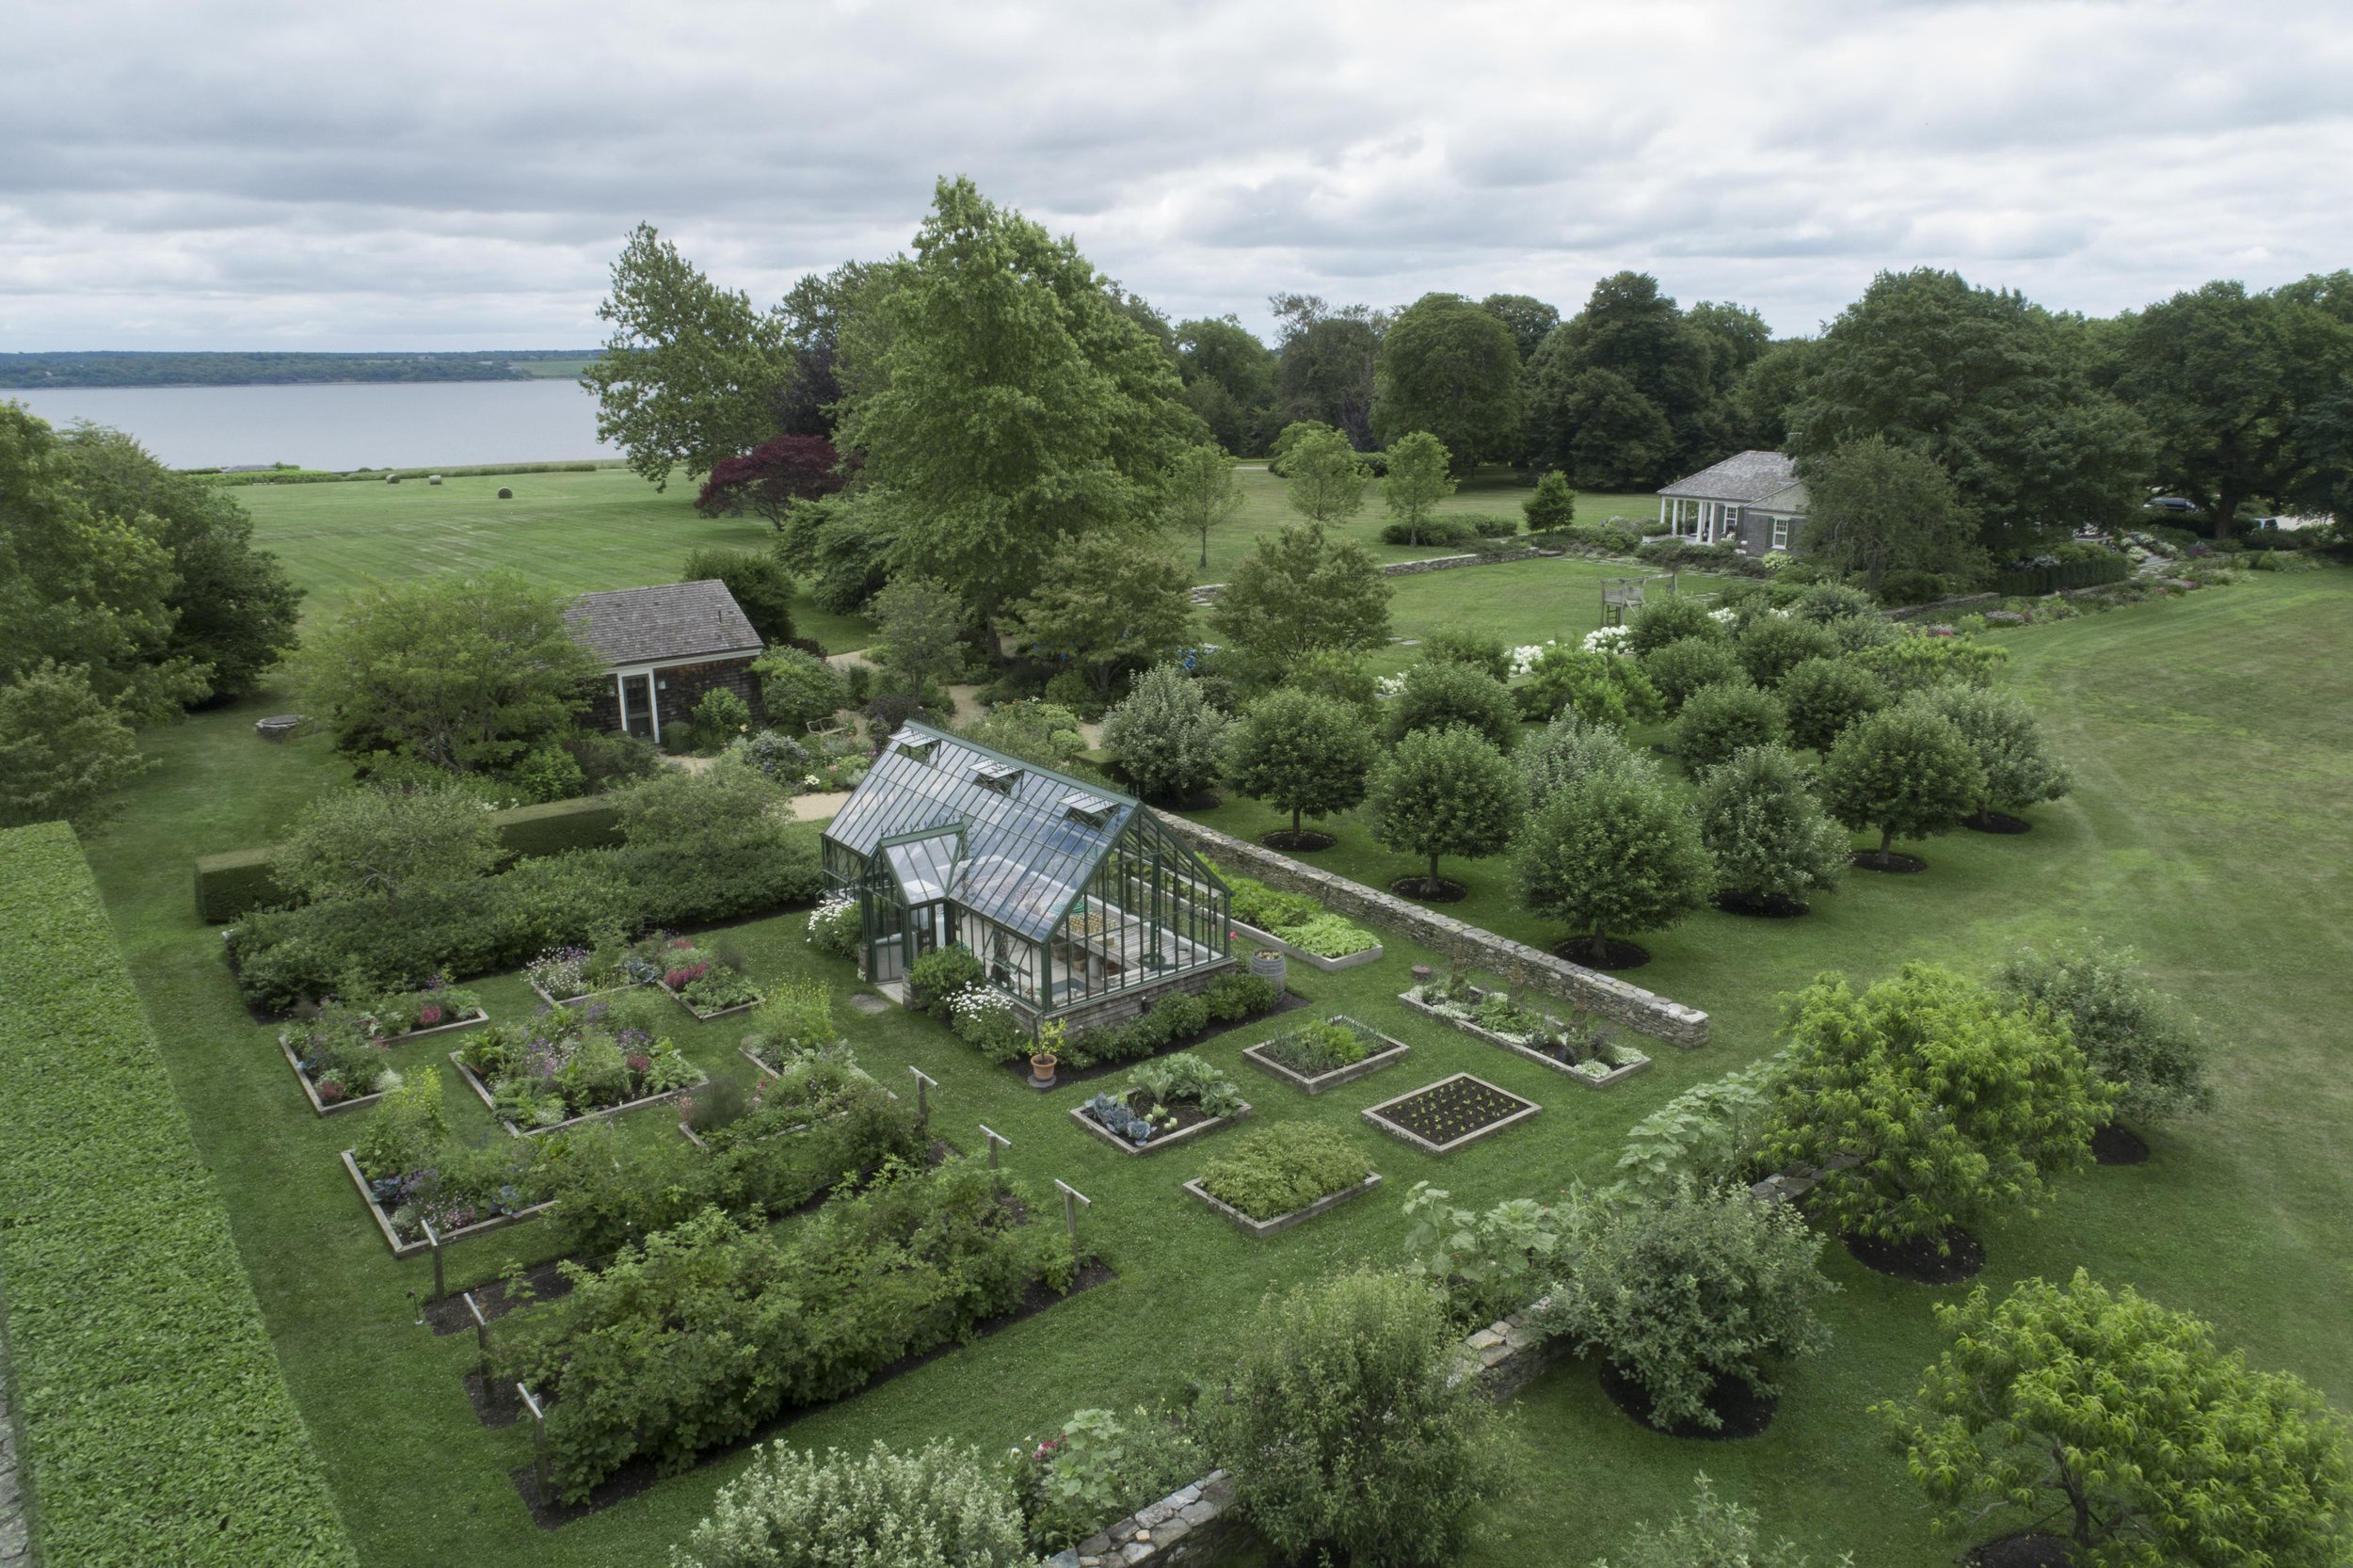 LANDSCAPE ARCHITECTURE: Hoerr Schaudt Landscape Architects for “New England Farm” (Copy)